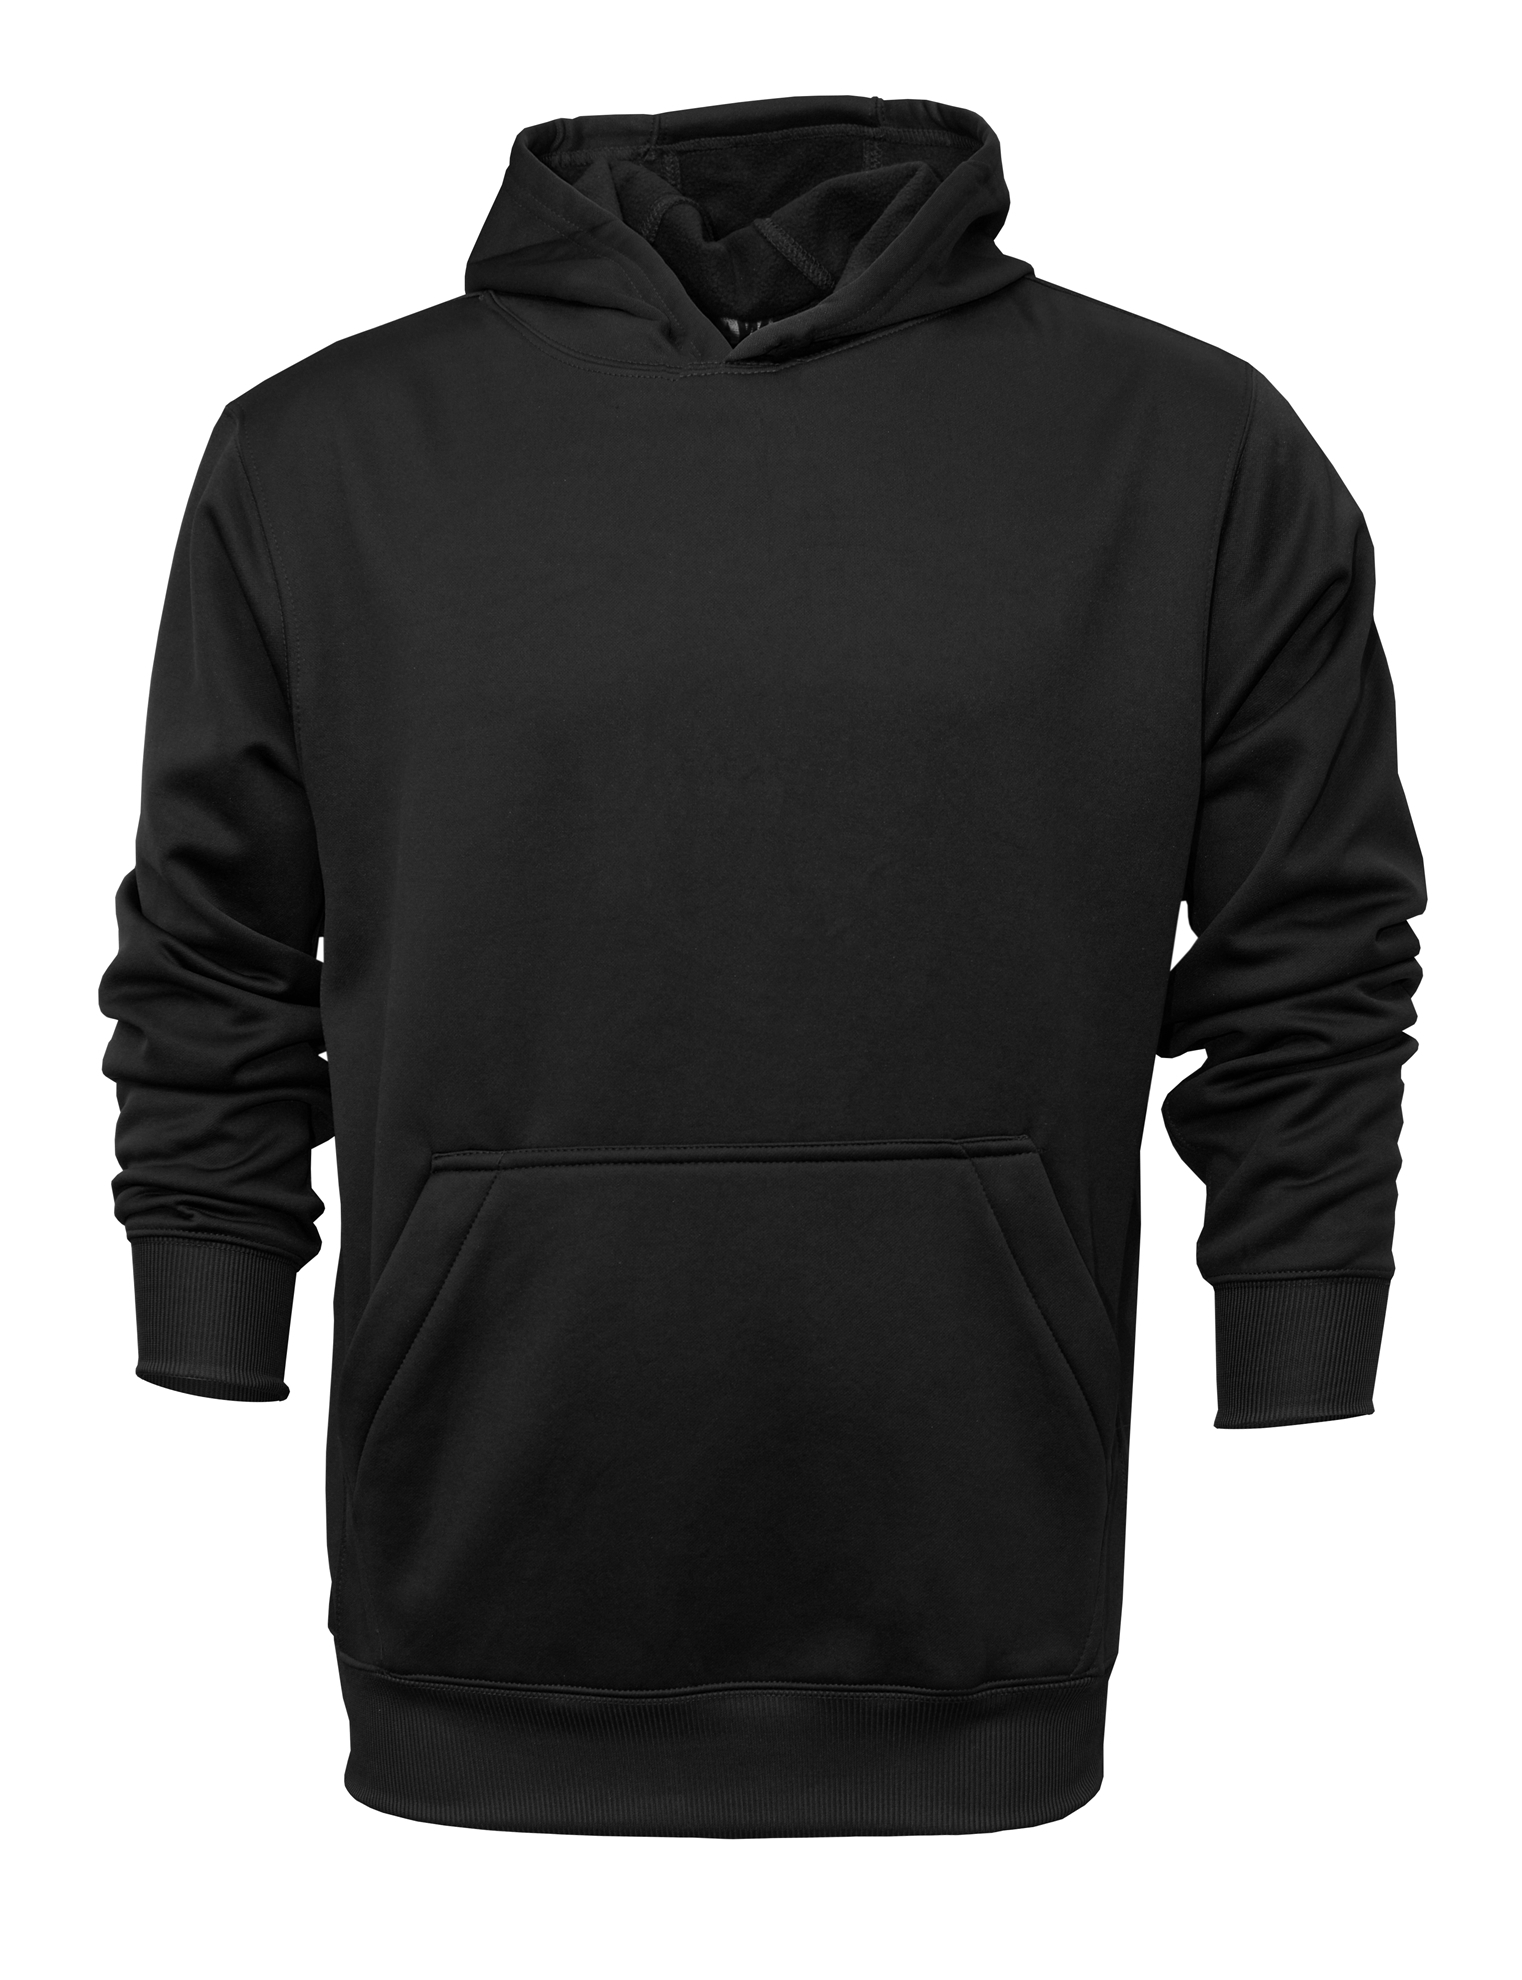 BAW Athletic Wear F150Y - Youth Hooded Sweatshirt